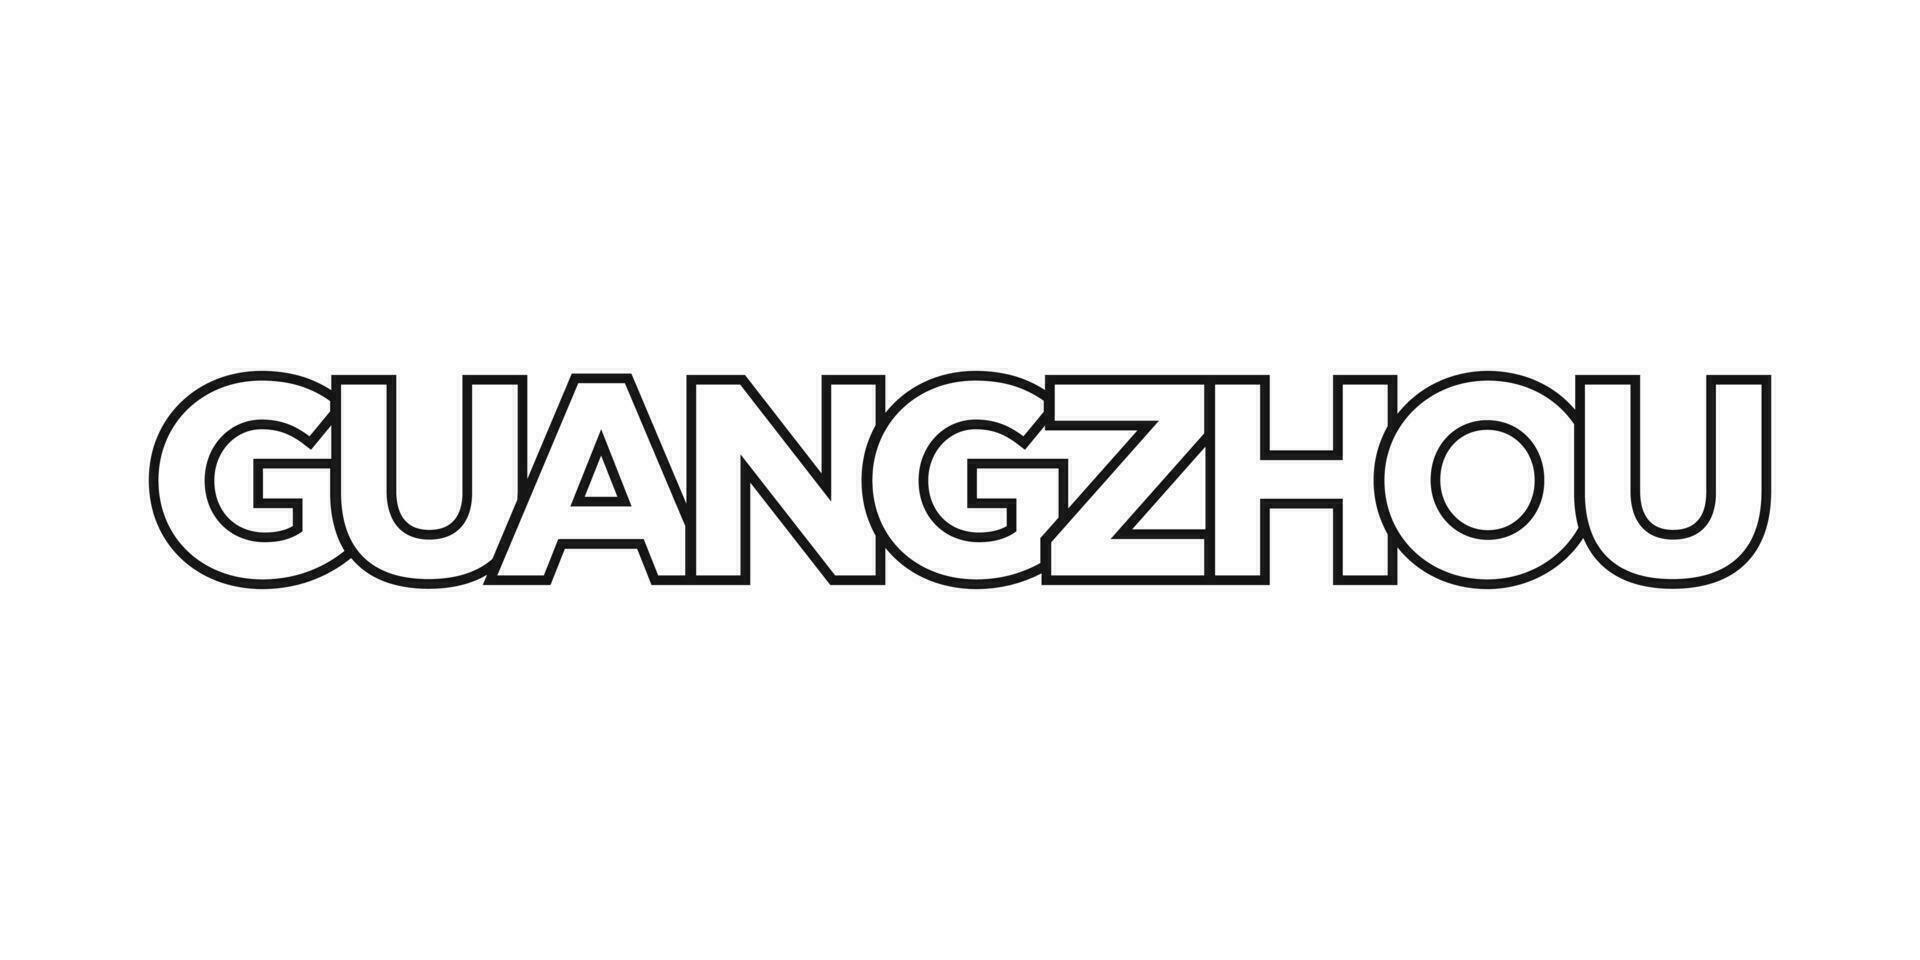 guangzhou dans le Chine emblème. le conception Caractéristiques une géométrique style, vecteur illustration avec audacieux typographie dans une moderne Police de caractère. le graphique slogan caractères.